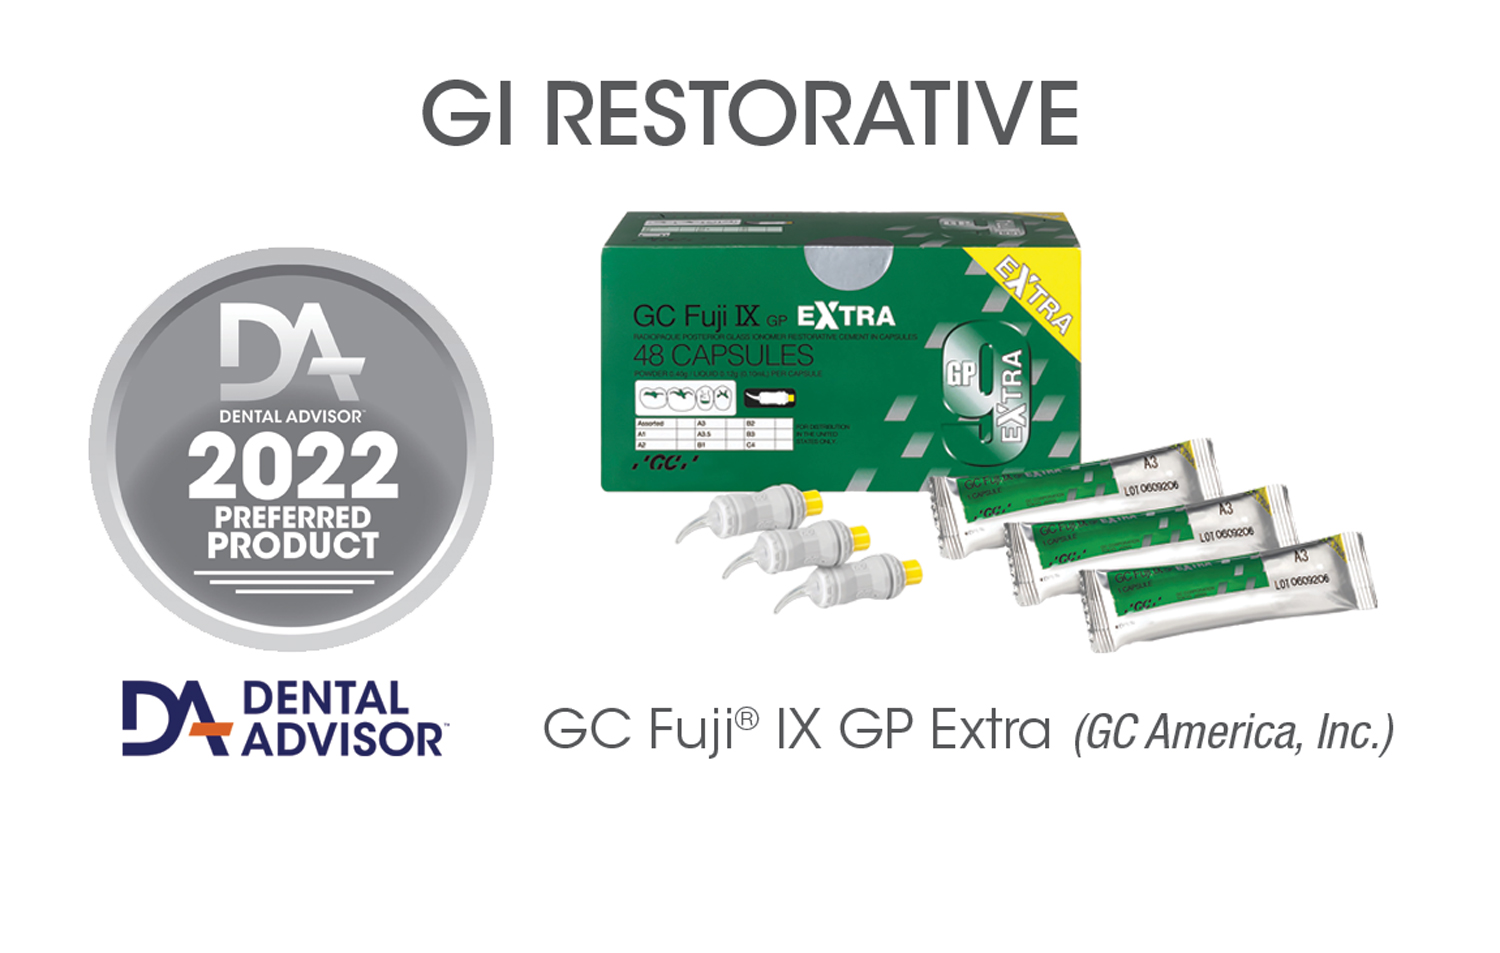 GC Fuji IX GP Extra